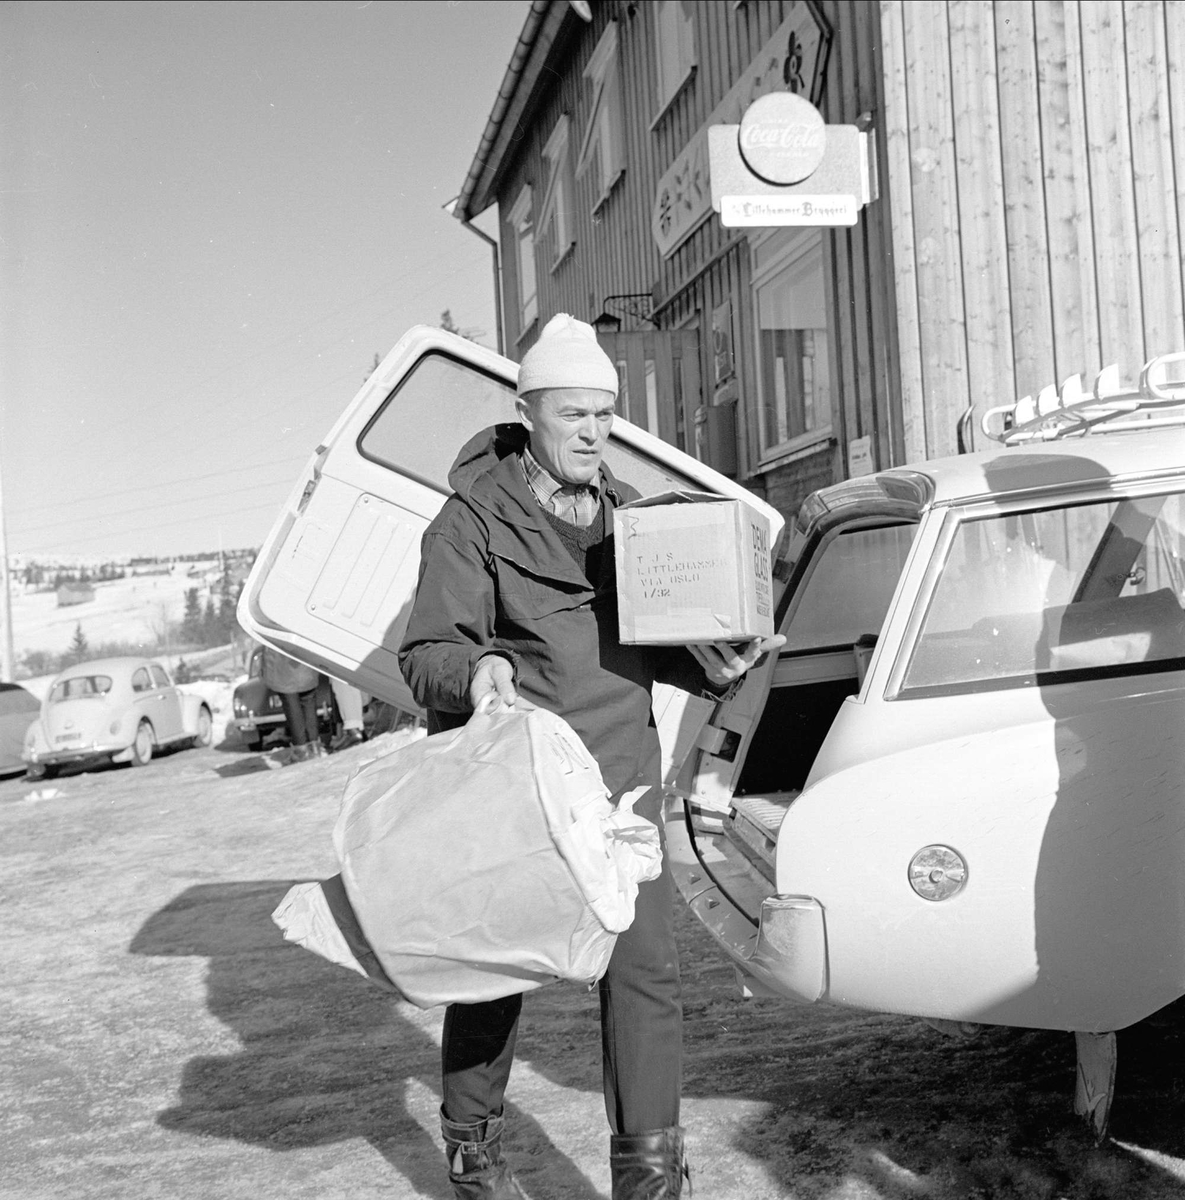 Øyer, Oppland, 25.03.1964. Skiturist, biler og bygning. Ant. ved Pellestova.